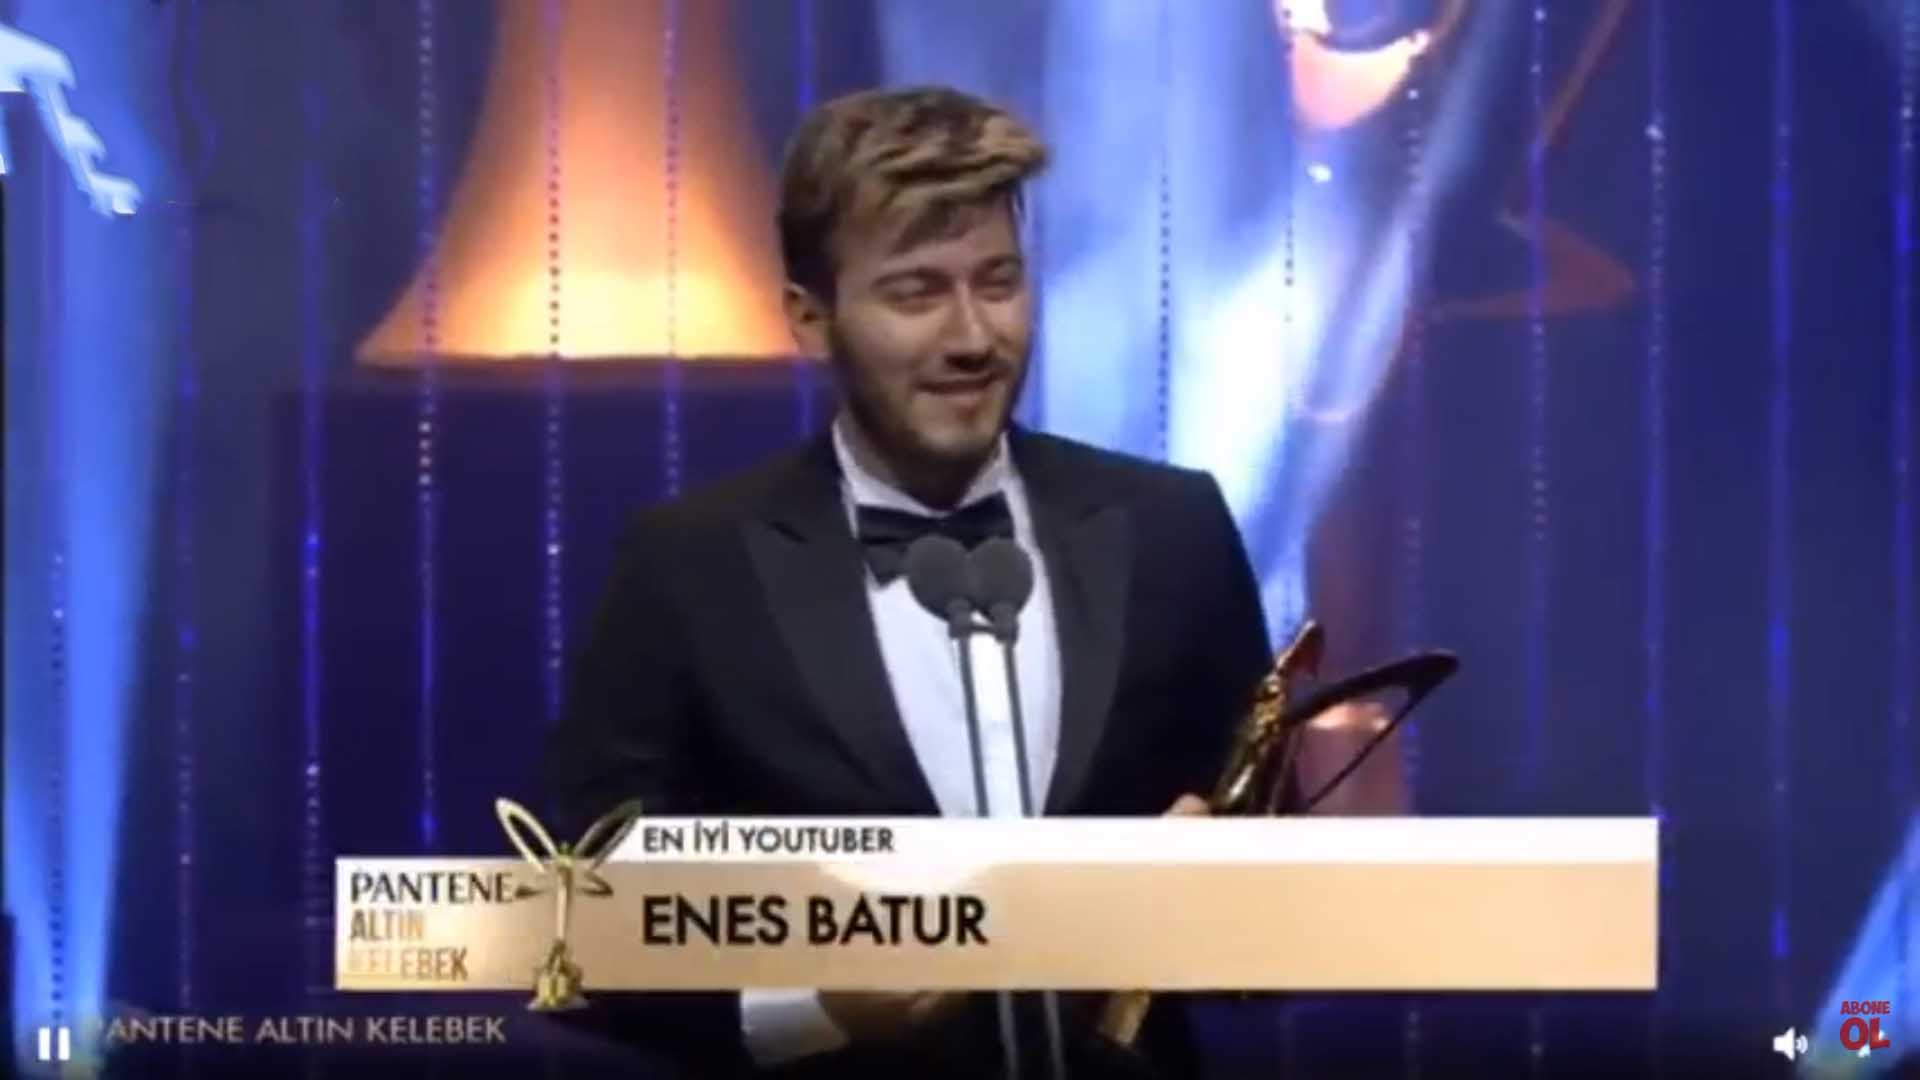 Pantene Altın Kelebek En iyi YouTuber : Enes Batur